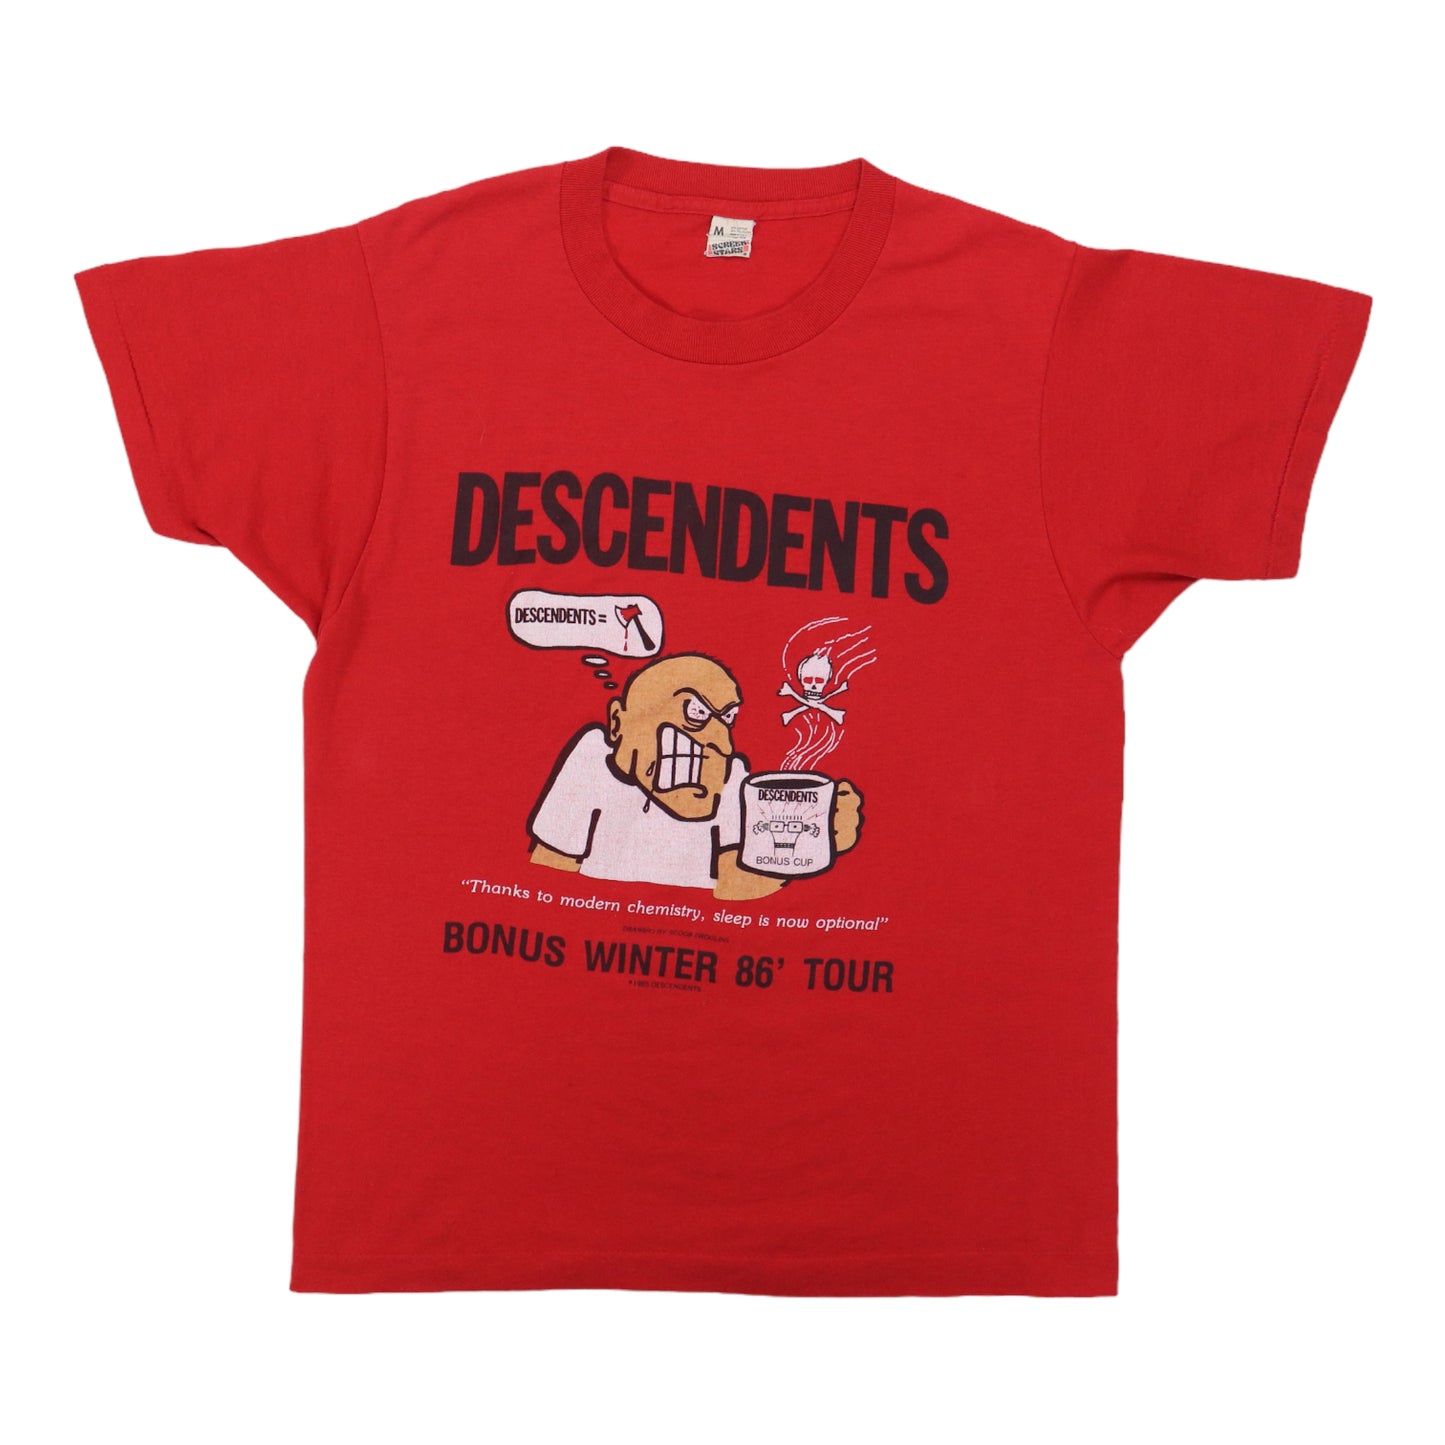 1986 Descendents Winter Tour Shirt